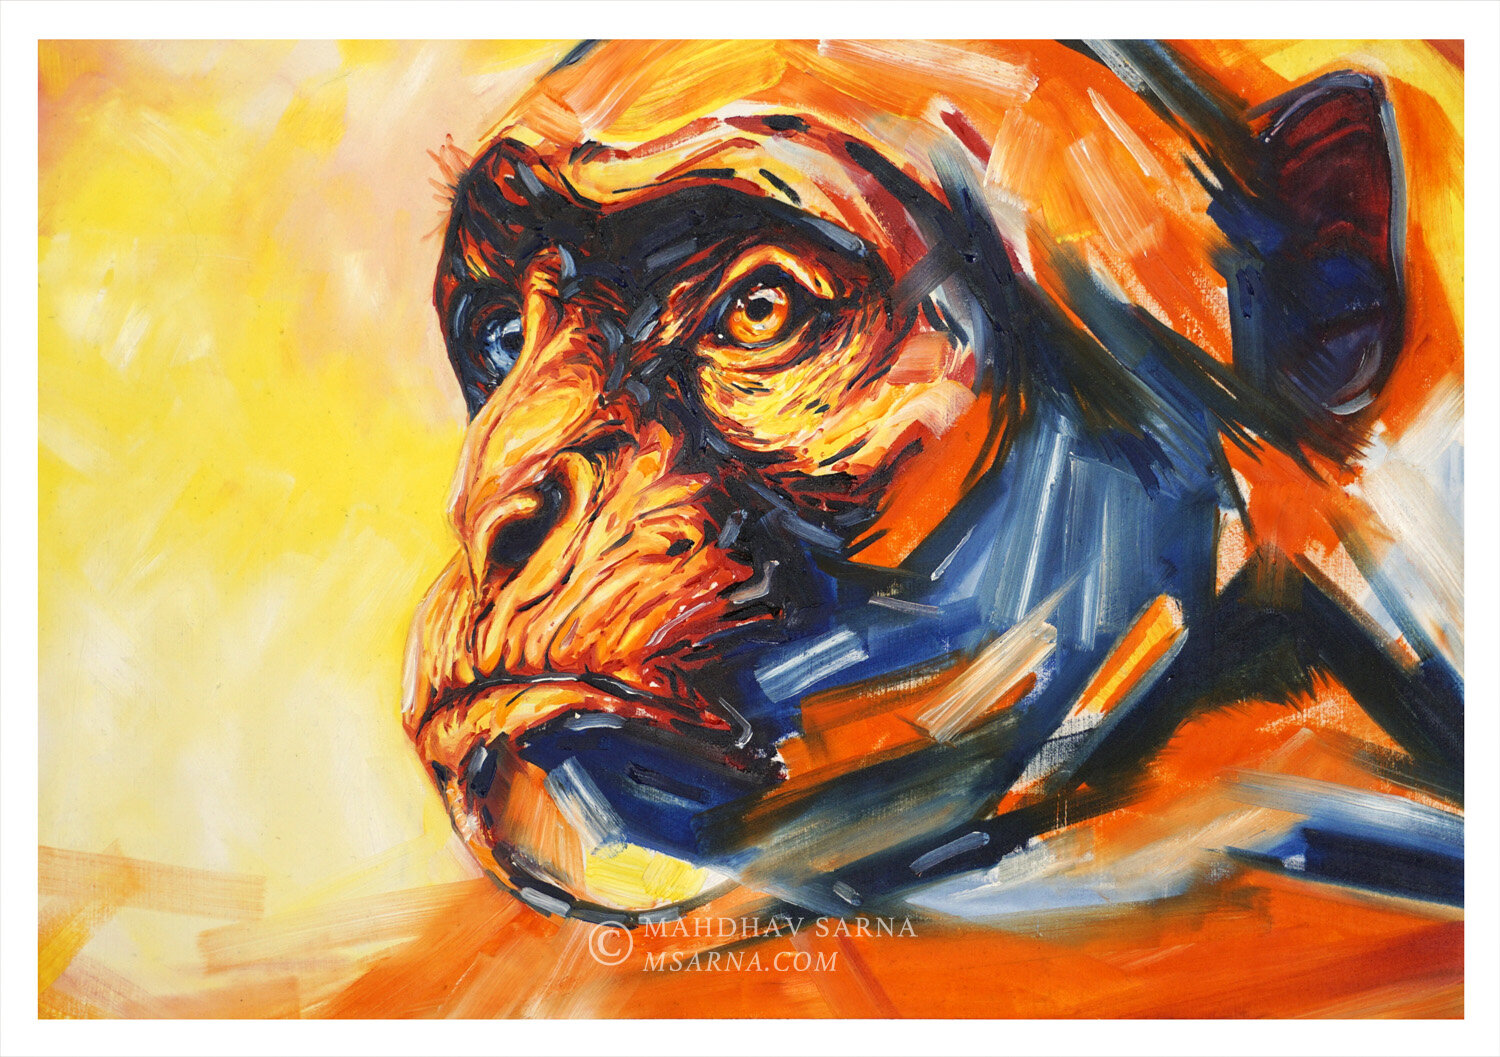 vervet monkey oil painting tlko wildlife art mahdhav sarna 01.jpg